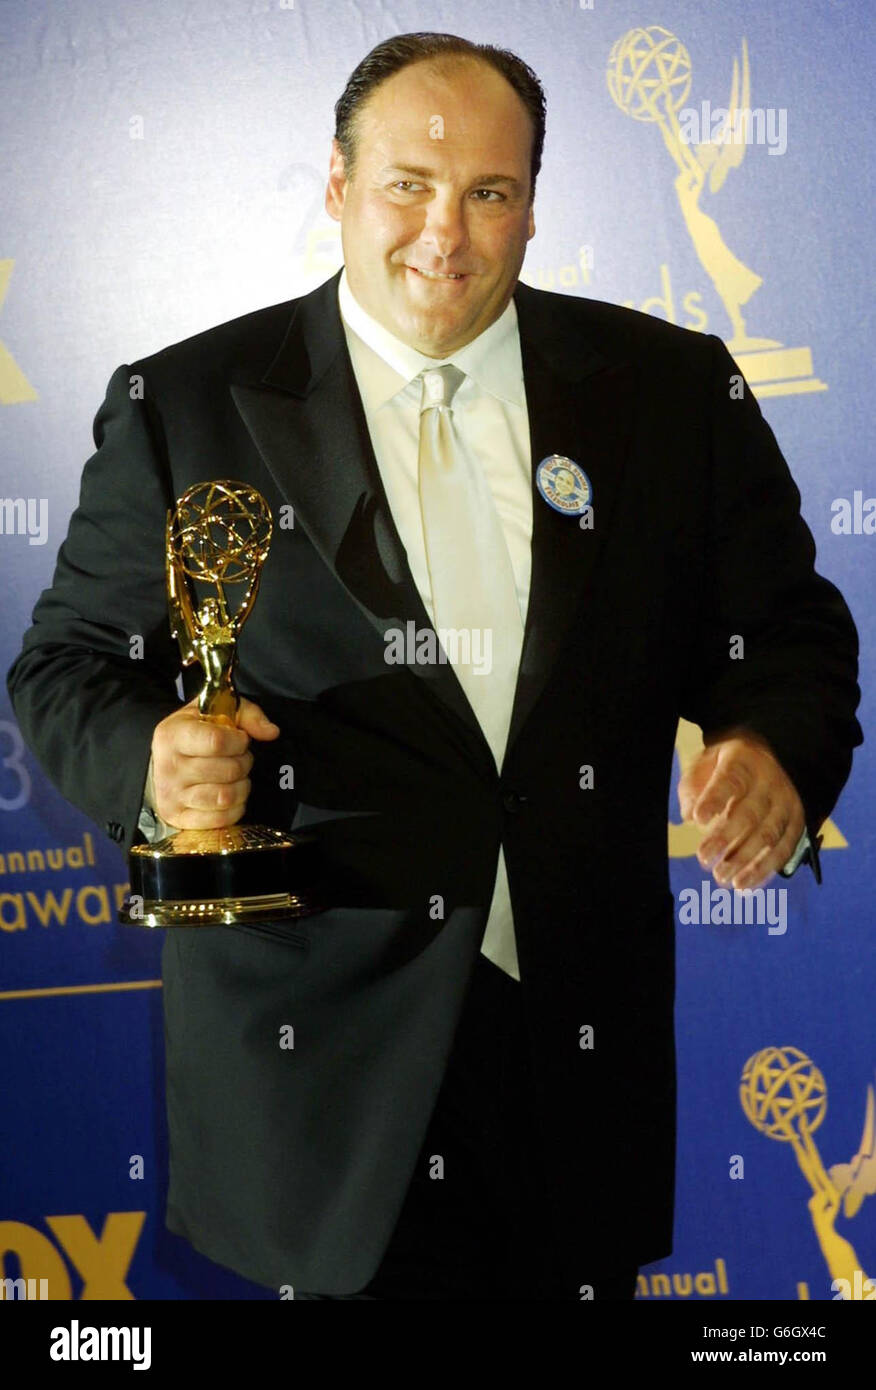 L'attore James Gandolfini ha vinto il premio come protagonista della serie drammatica "The Sopranos" durante il 55° Primetime Emmy Awards al Shrine Auditorium di Los Angeles. Foto Stock